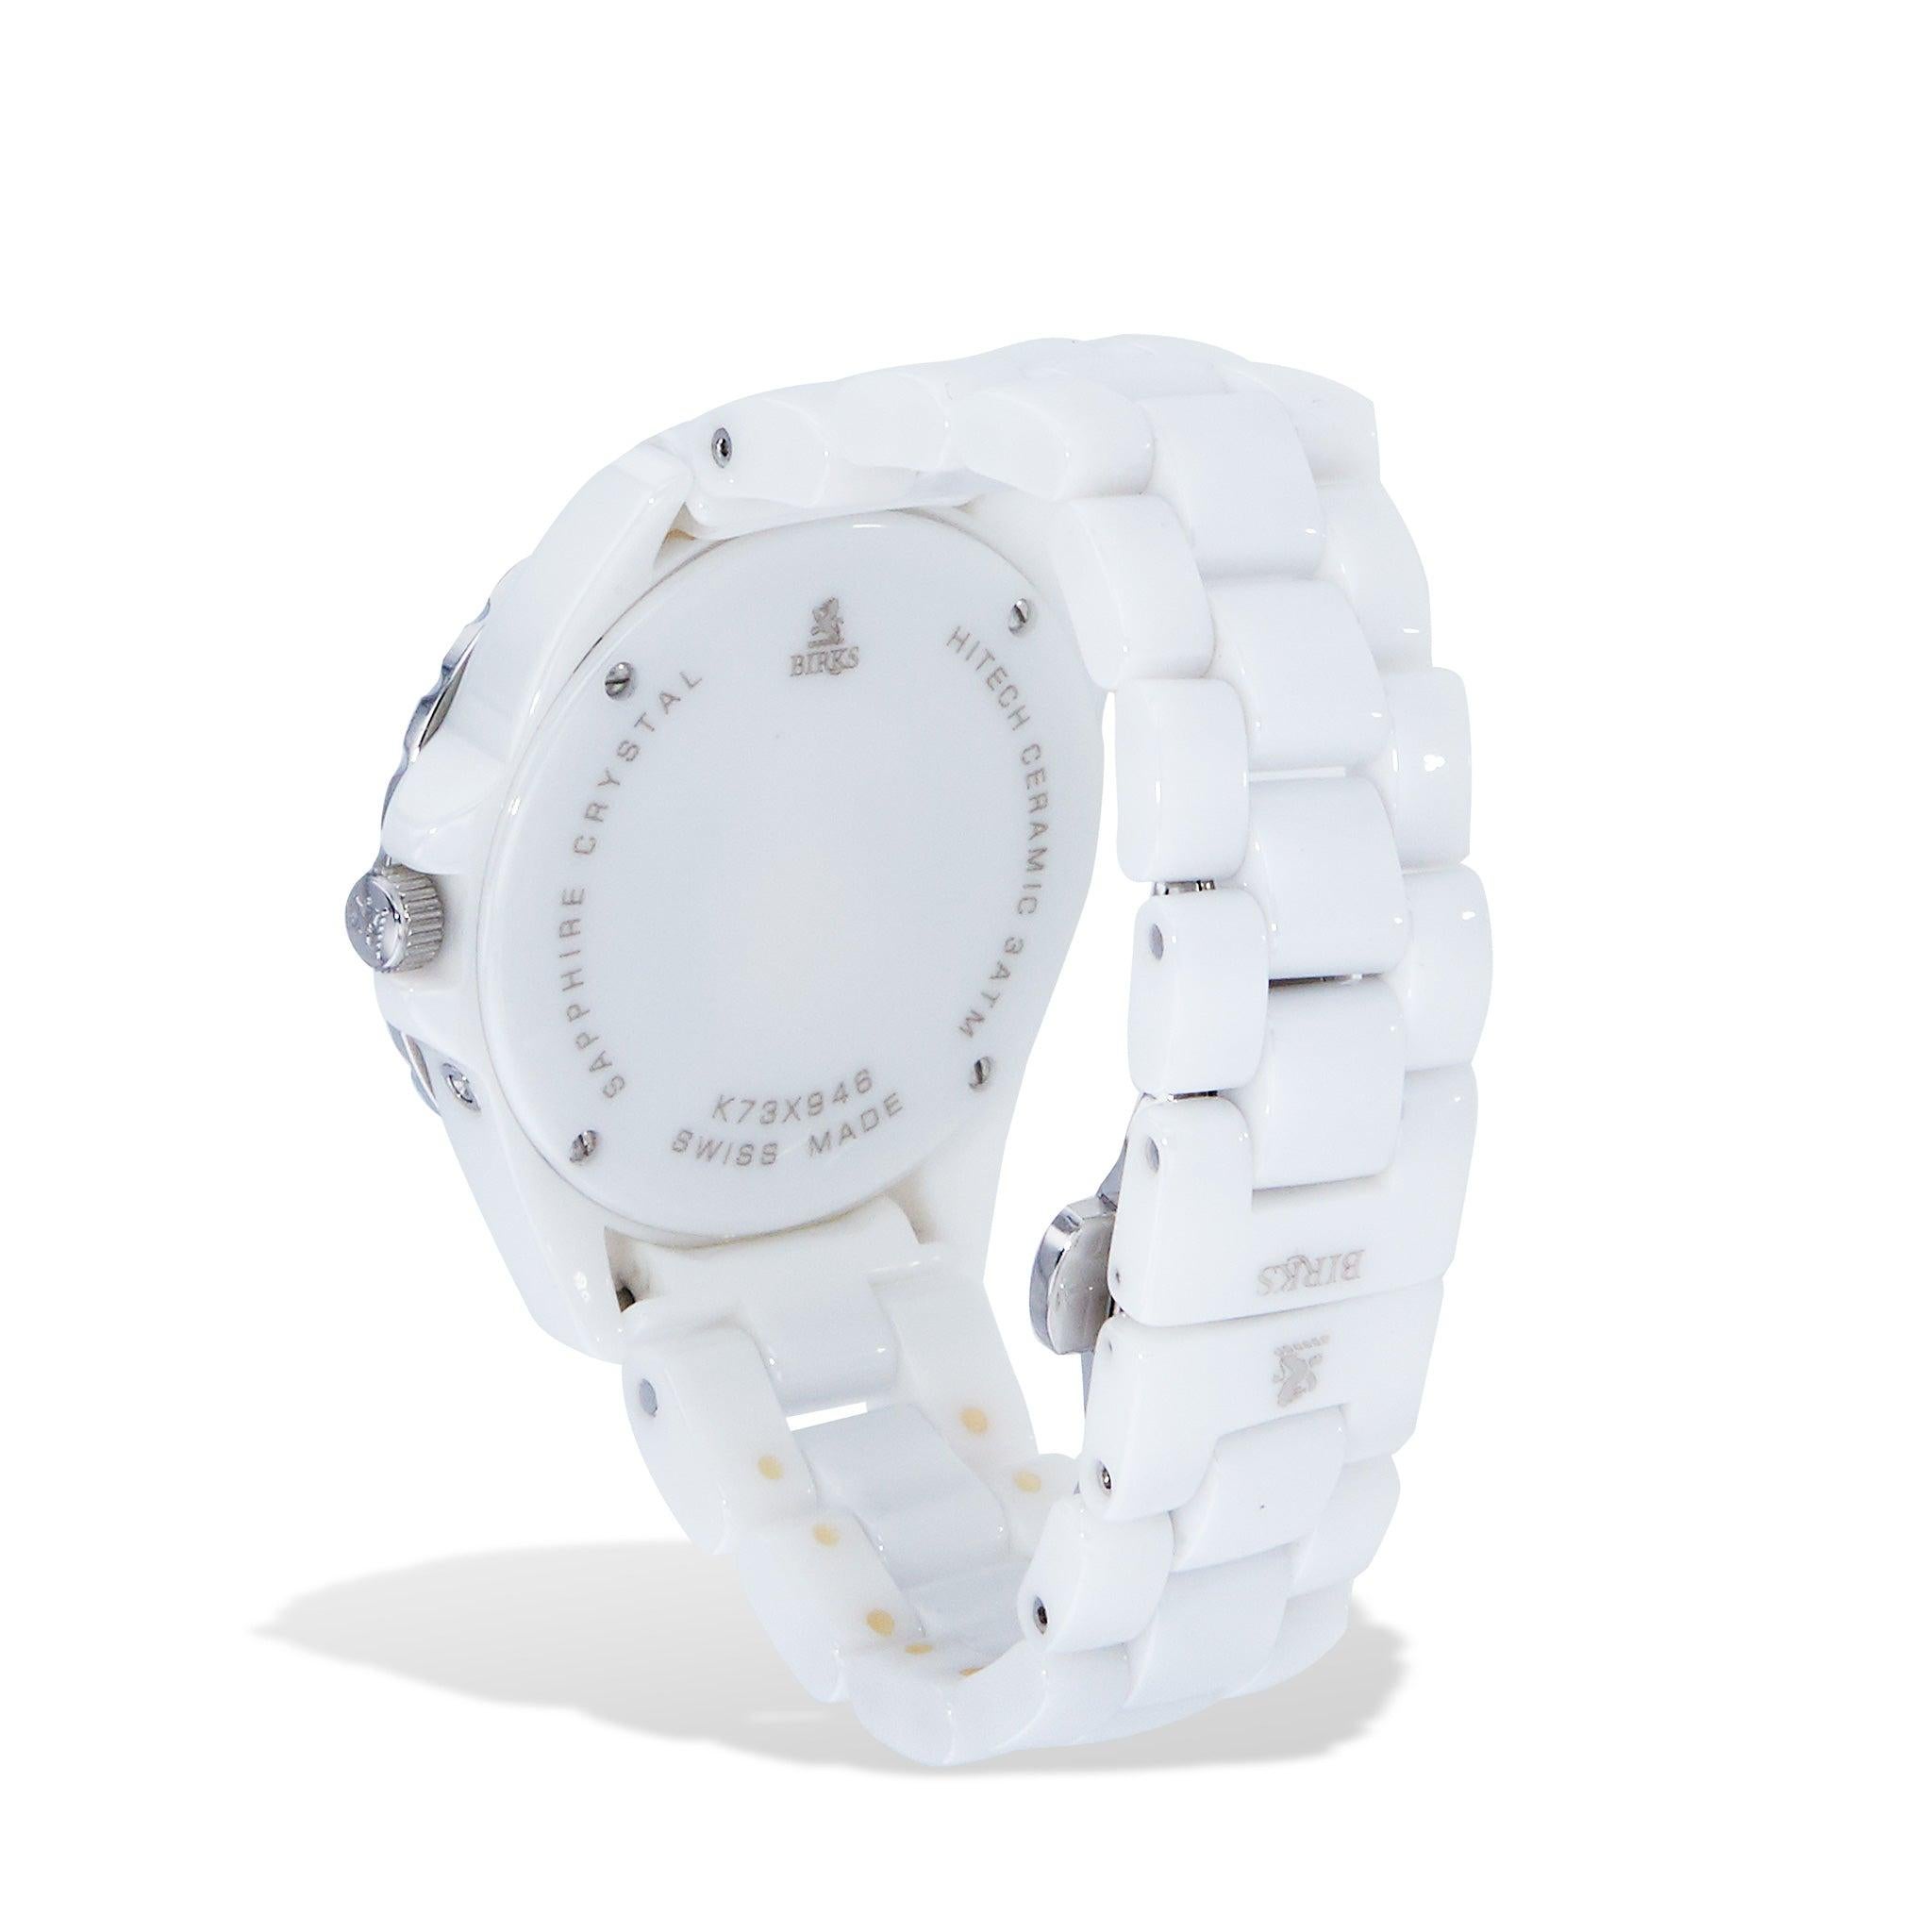 Diese elegante weiße Keramikuhr Estate Birks Hi Tech verbindet luxuriösen Stil und moderne Technologie mit einem diamantbesetzten Perlmuttzifferblatt und einem Quarzwerk. Verleihen Sie Ihren Looks einen einzigartigen Touch mit dieser Uhr, die sich